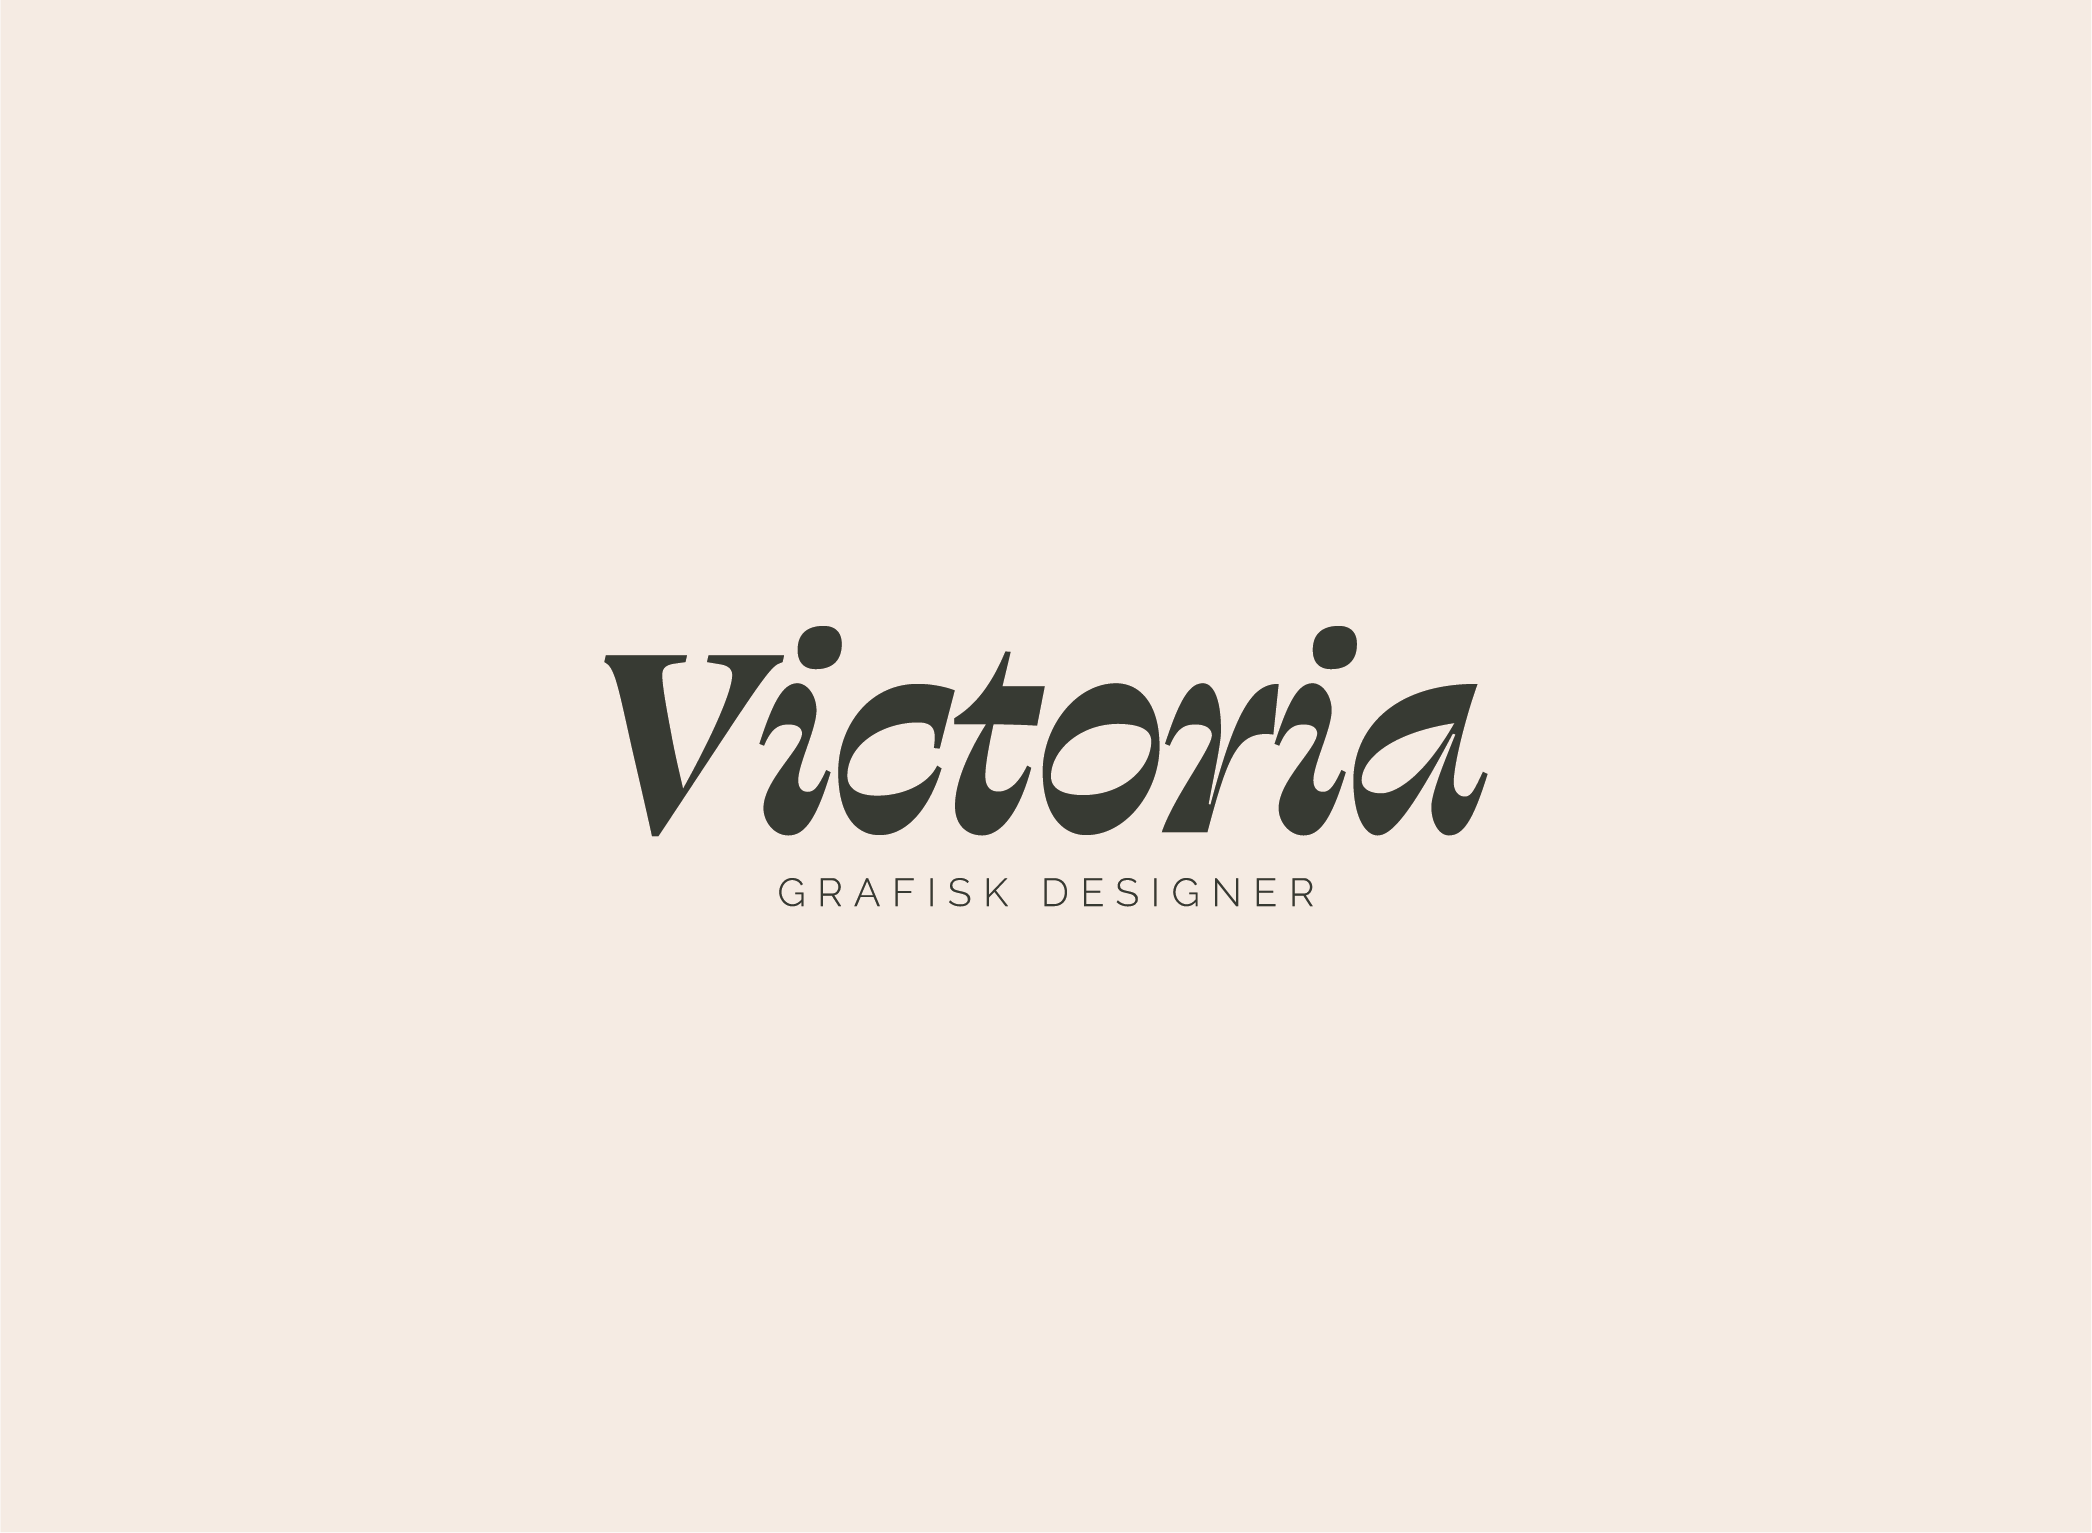 Victoria Eklund Wiklund – Graphic designer logotyp